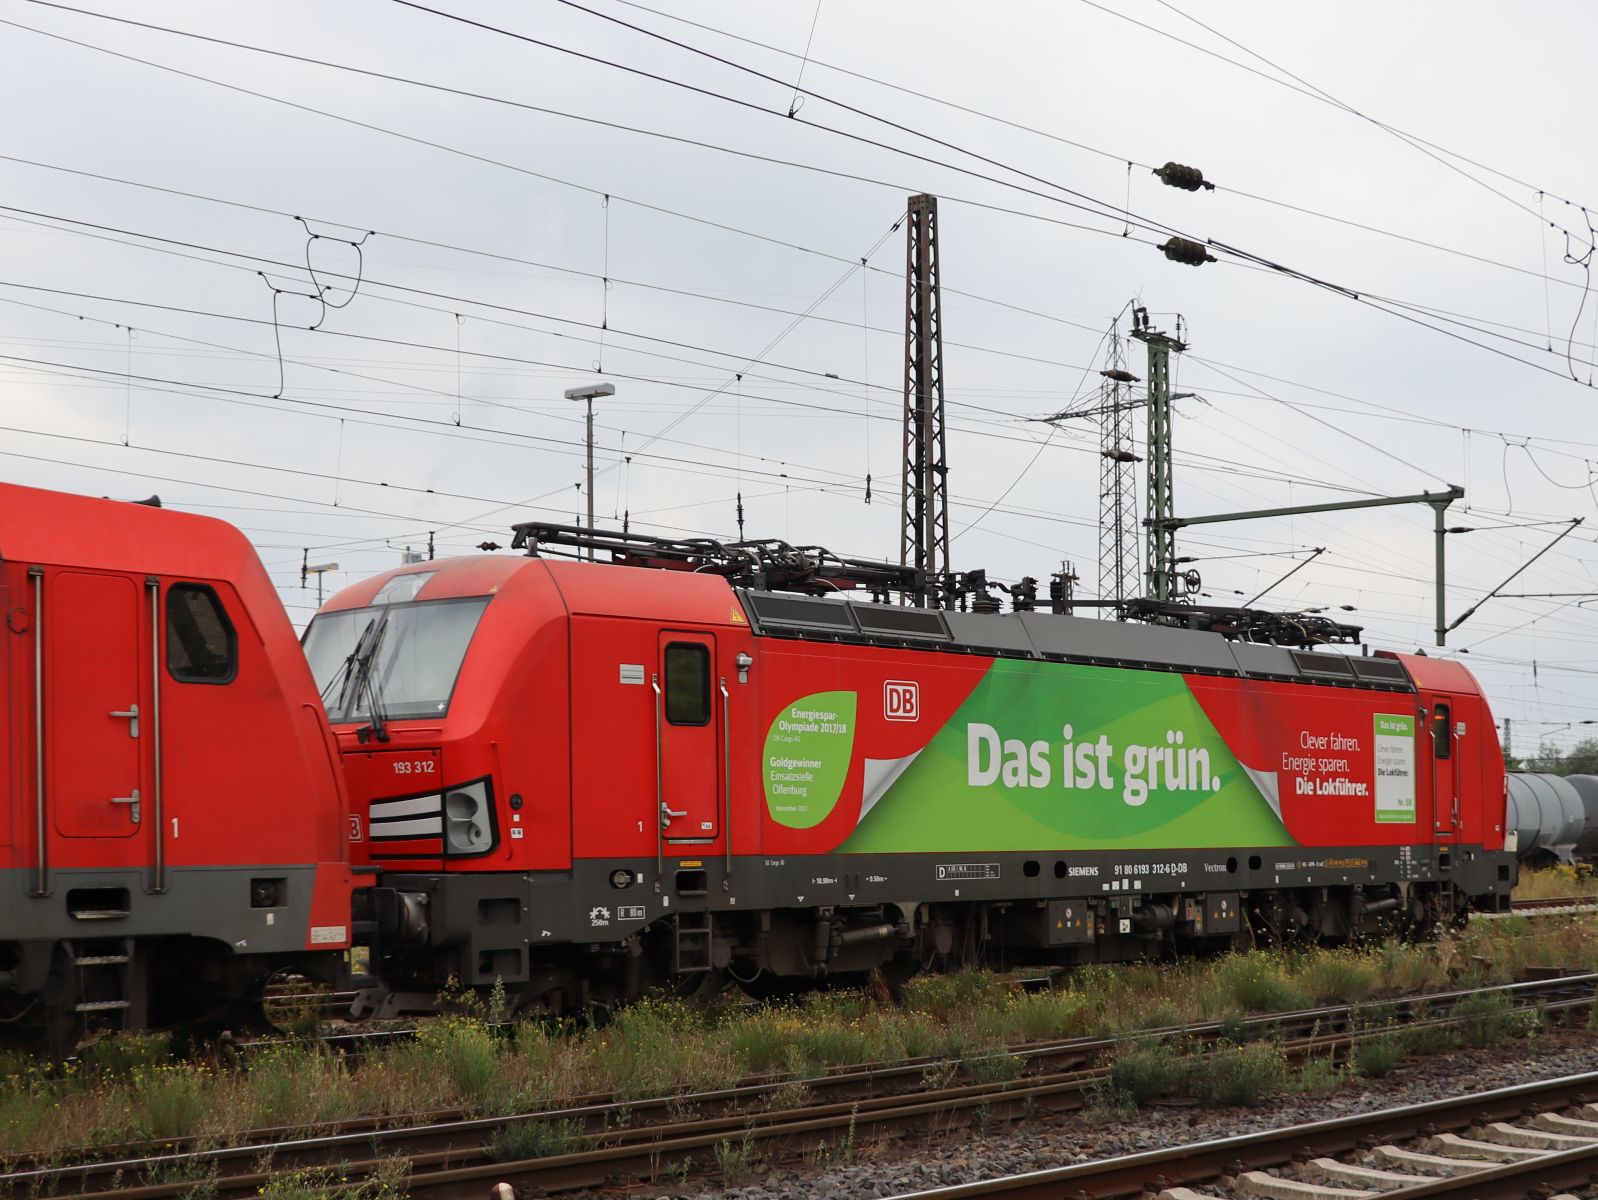 DB Cargo Lokomotive 193 312-6 (91 80 6193 312-6 D-DB) mit Aufschrift  Das ist grun  und 185 248-2 (91 80 6 185 248-2 D-DB) Gterbahnhof Oberhausen West 18-08-2022.

DB Cargo locomotief 193 312-6 (91 80 6193 312-6 D-DB) met opschrift  Das ist grun  en 185 248-2 (91 80 6 185 248-2 D-DB) goederenstation Oberhausen West 18-08-2022.